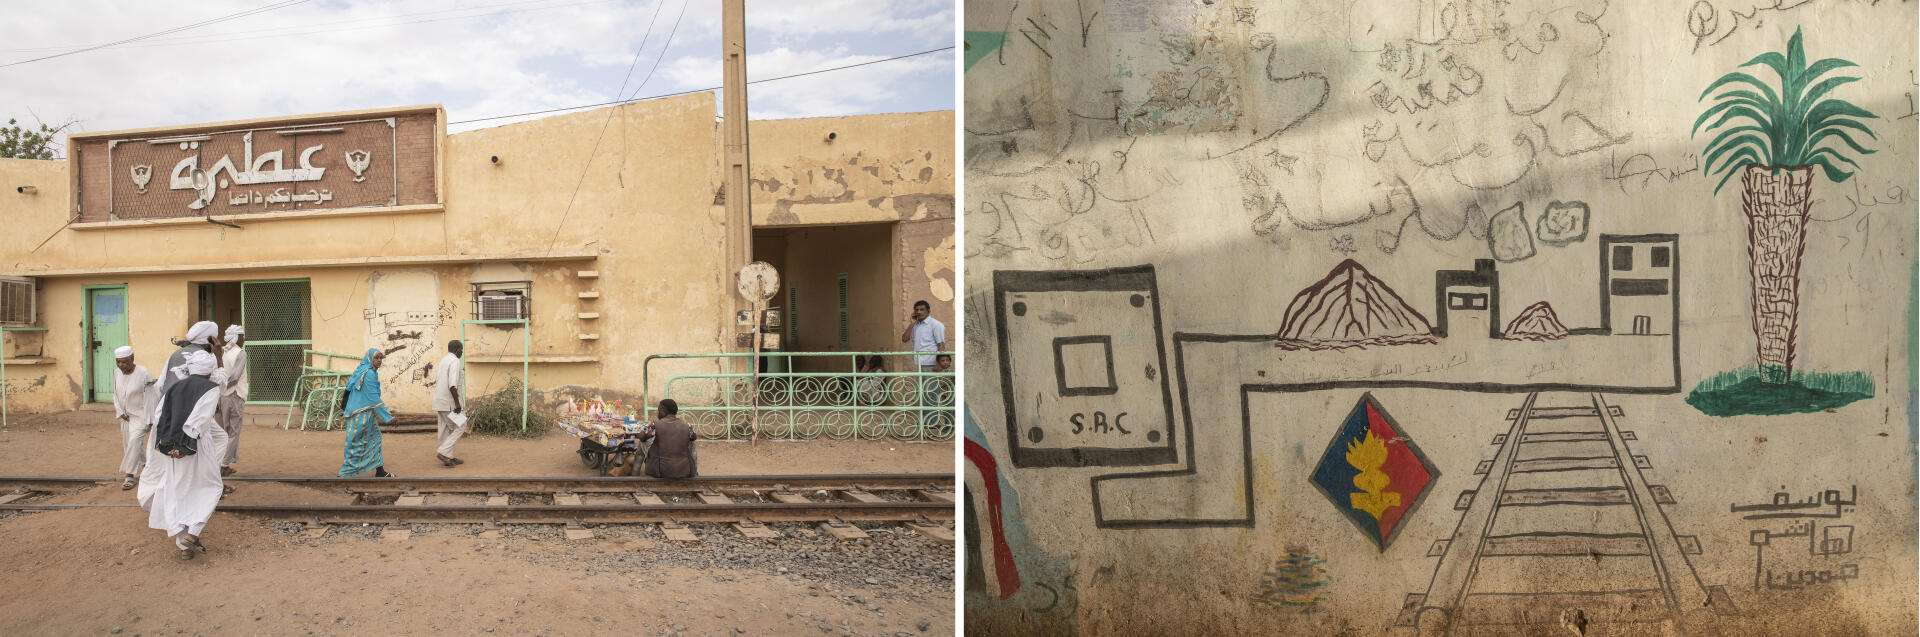 A gauche : « Vous êtes toujours les bienvenus à Atbara », dit cette enseigne à l’entrée de la gare. A droite, un graffiti en l’honneur de la Sudan Railways Corporation, qui a connu son âge d’or dans les années 1970.